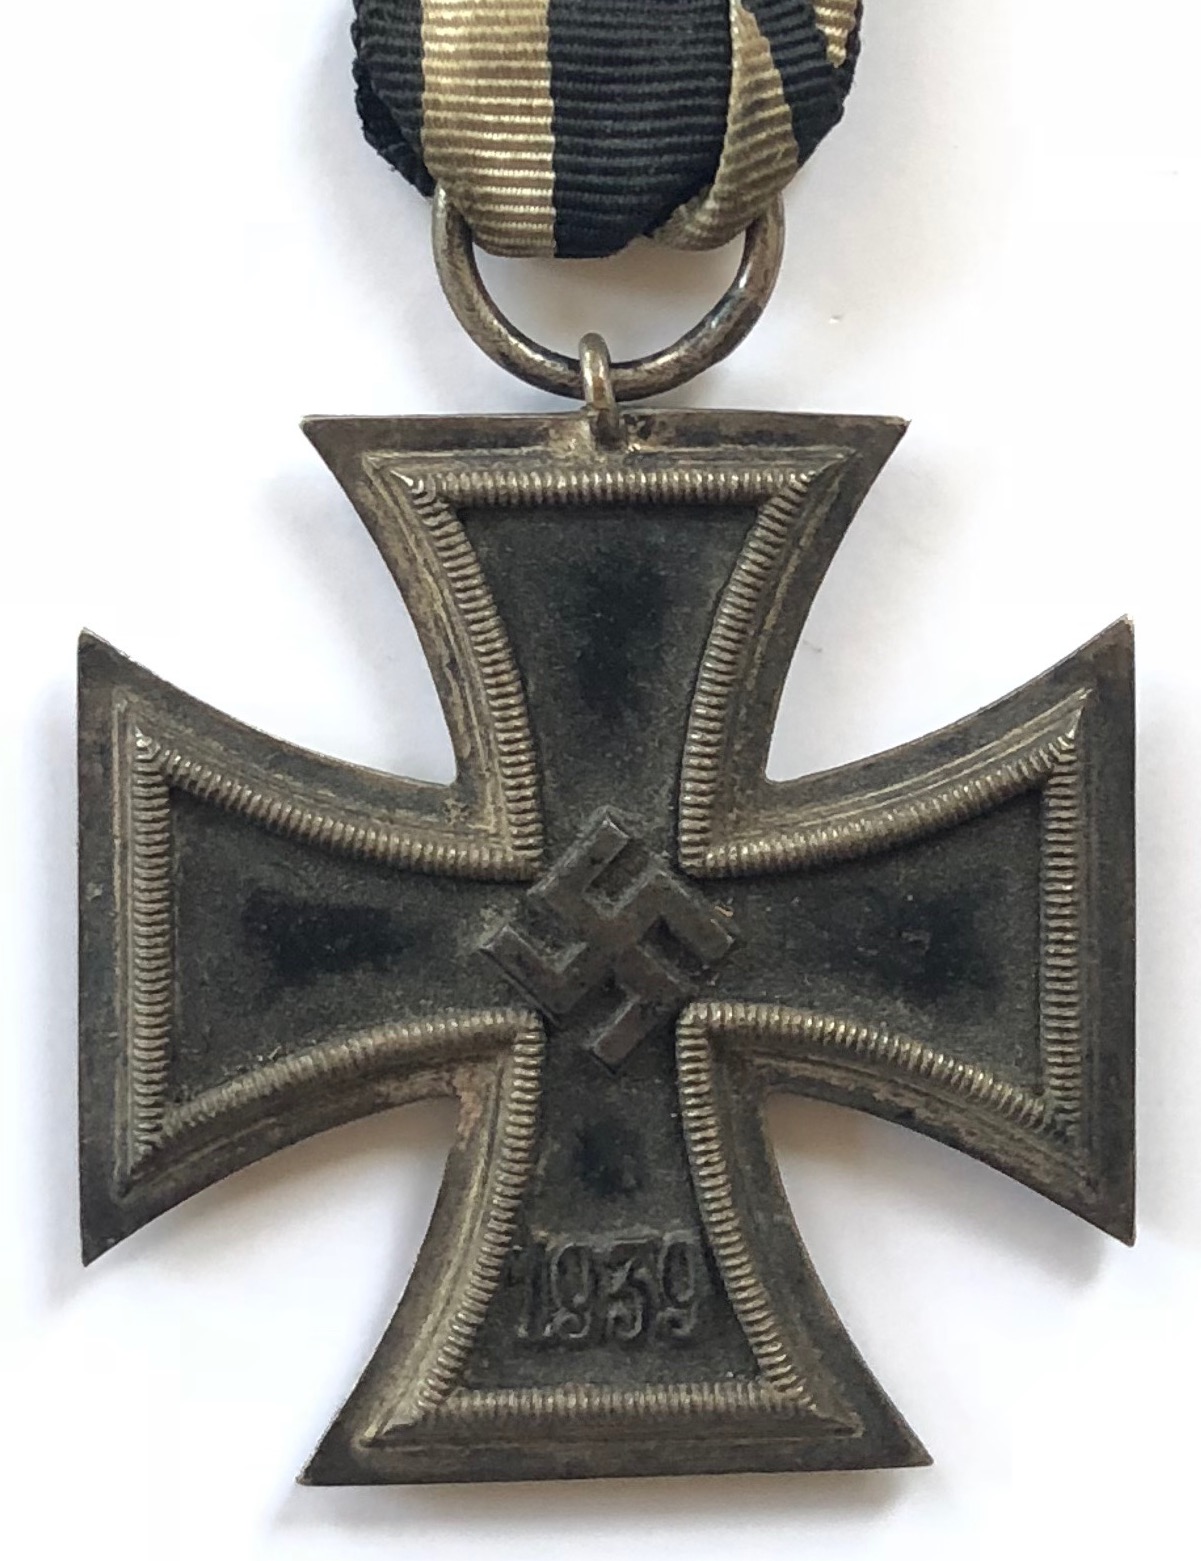 German Third Reich 1939 Iron Cross 2nd Class by Steinhauer und Luck, Ludenscheid. A good example